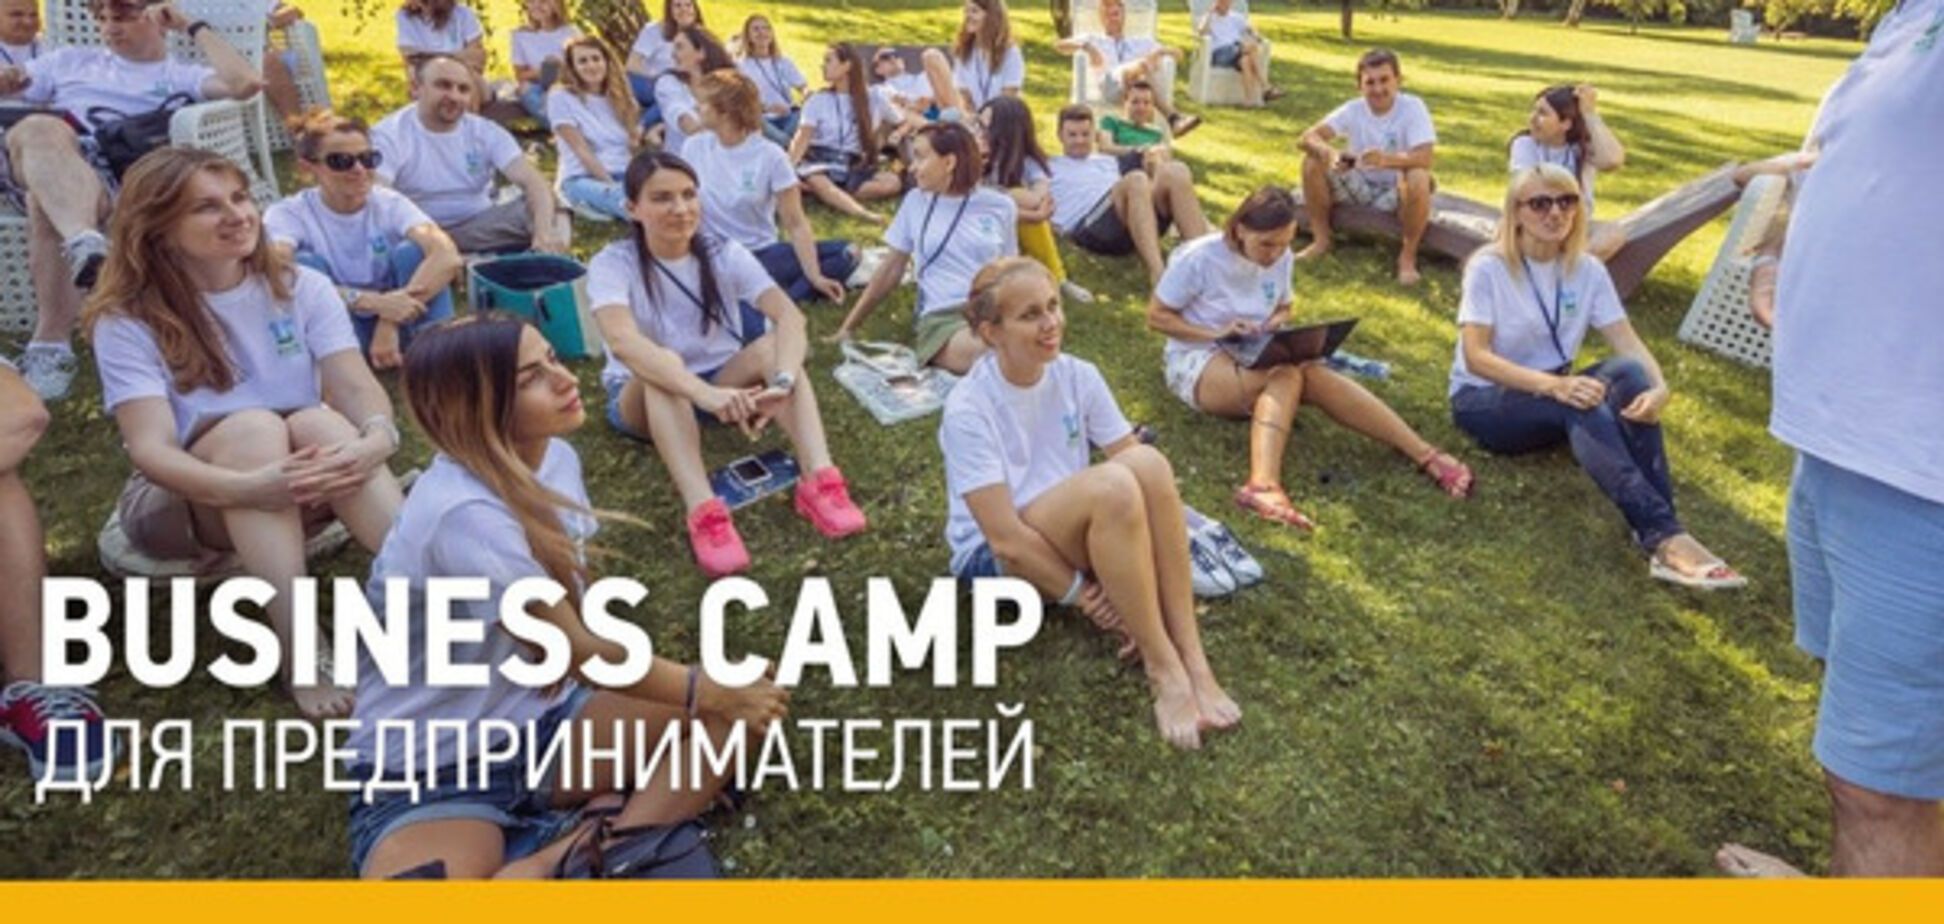 Десятый юбилейный бизнес-лагерь Made in Ukraine — эффективный отпуск для начинающих предпринимателей и собственников бизнеса